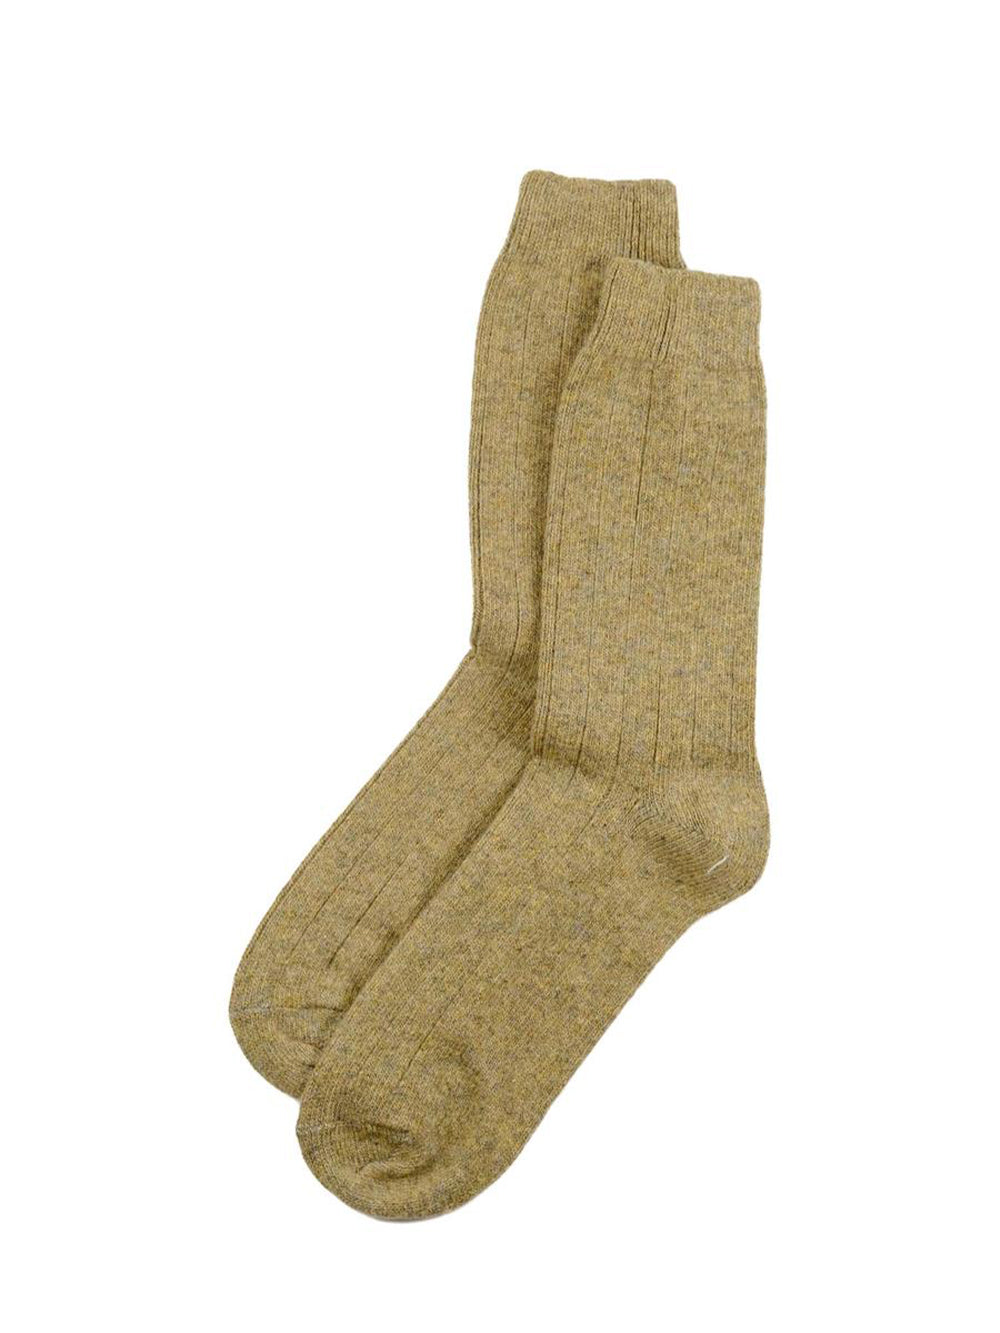 The Basic Wool Sock - Light Brown Melange